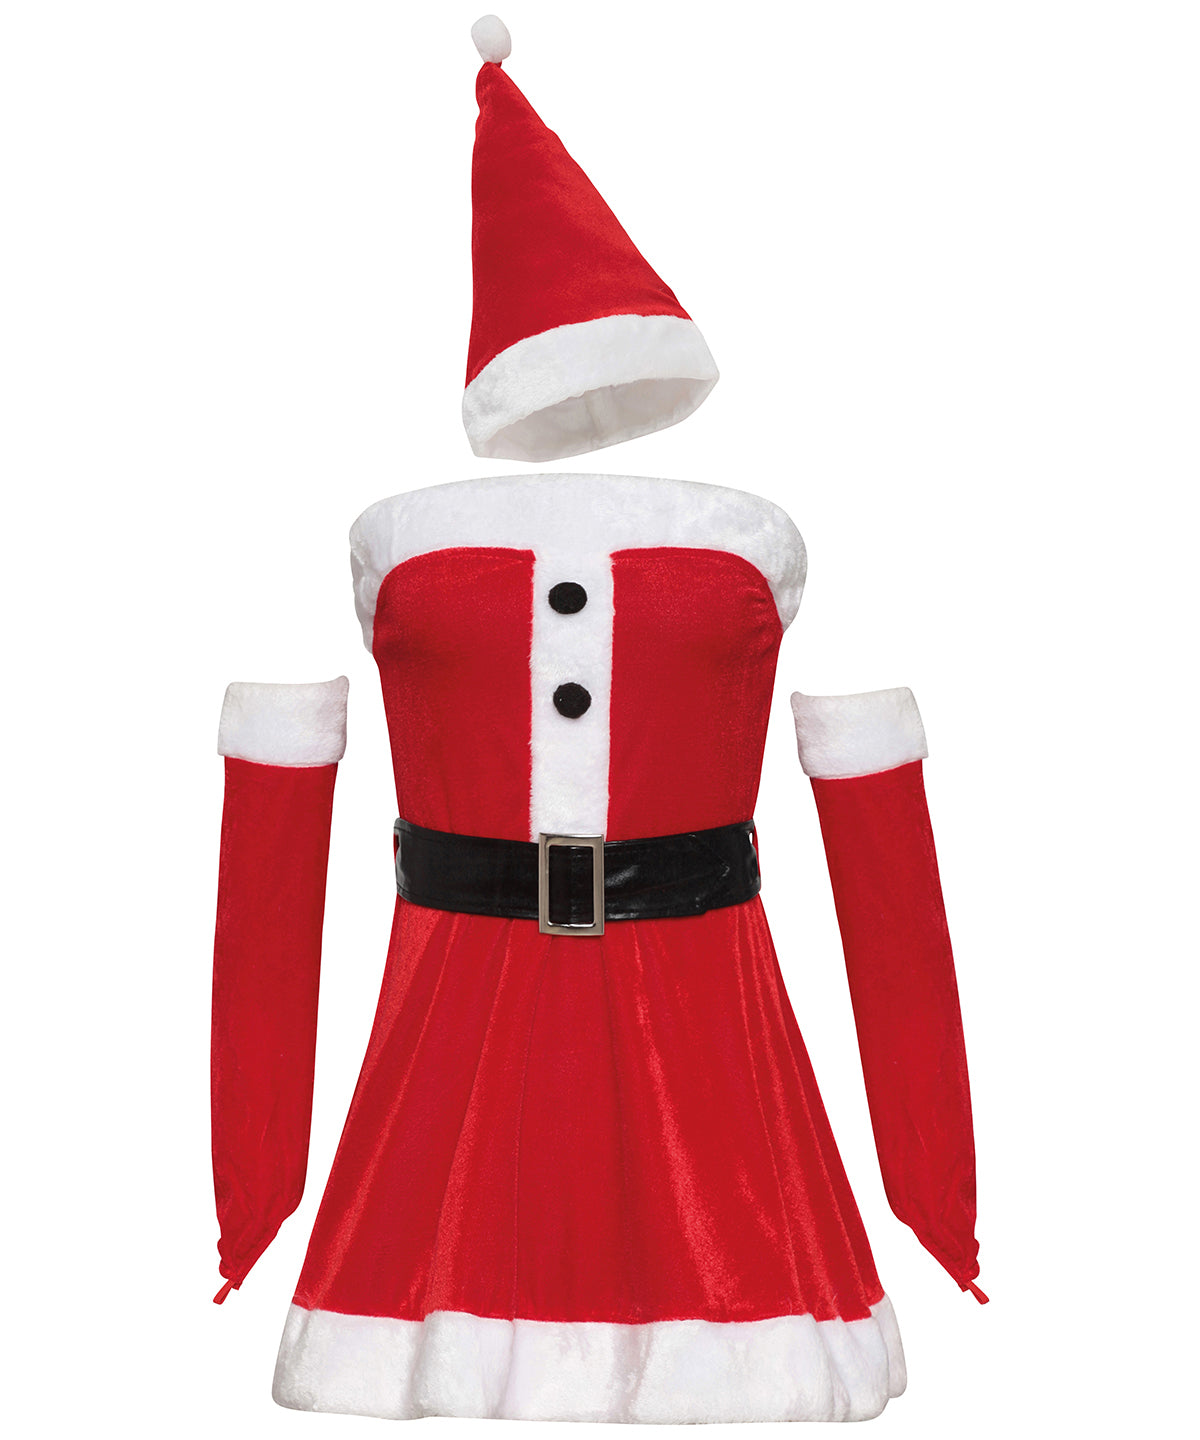 Kjólar - Women's Mini Dress Christmas Costume